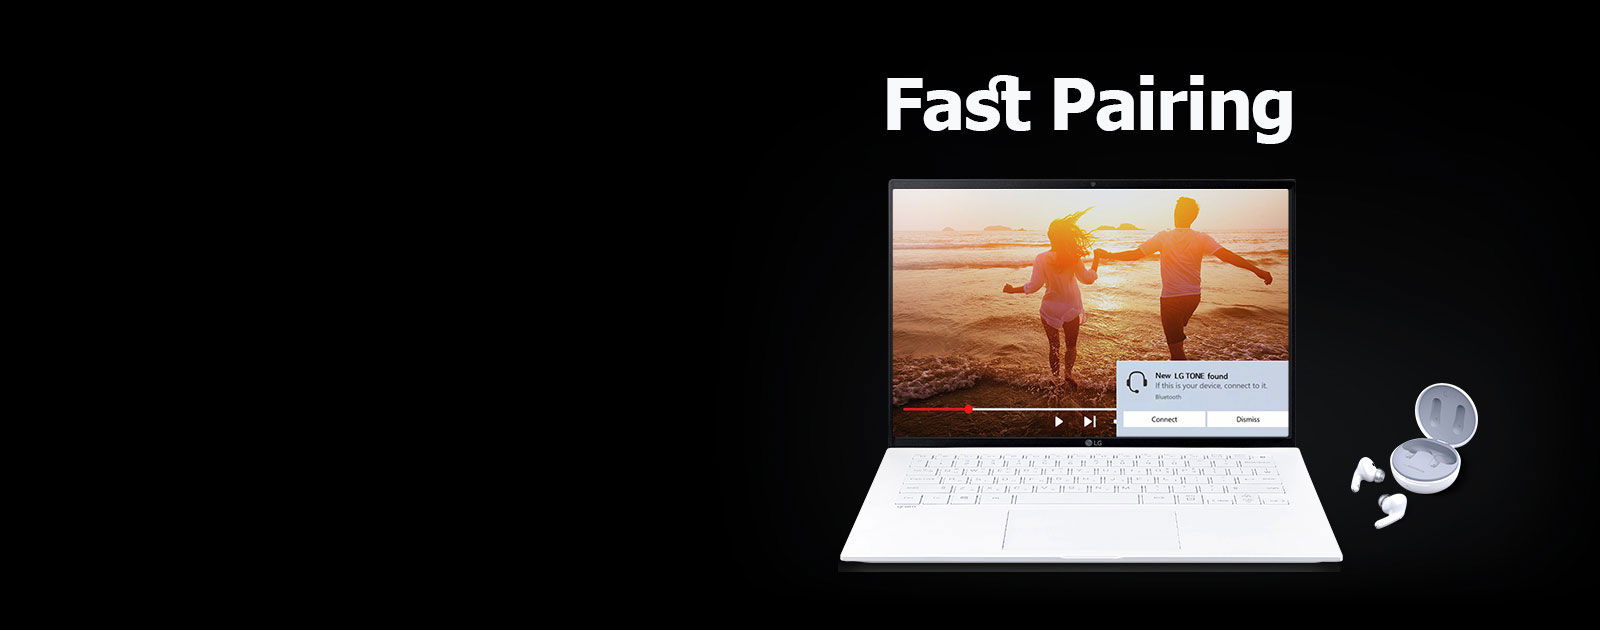 تصویری از یک لپ تاپ و TONE Free قرار گرفته در زیر عبارت «Fast Pairing» و هشدار Pairing روشن در صفحه نمایش باز لپ تاپ.